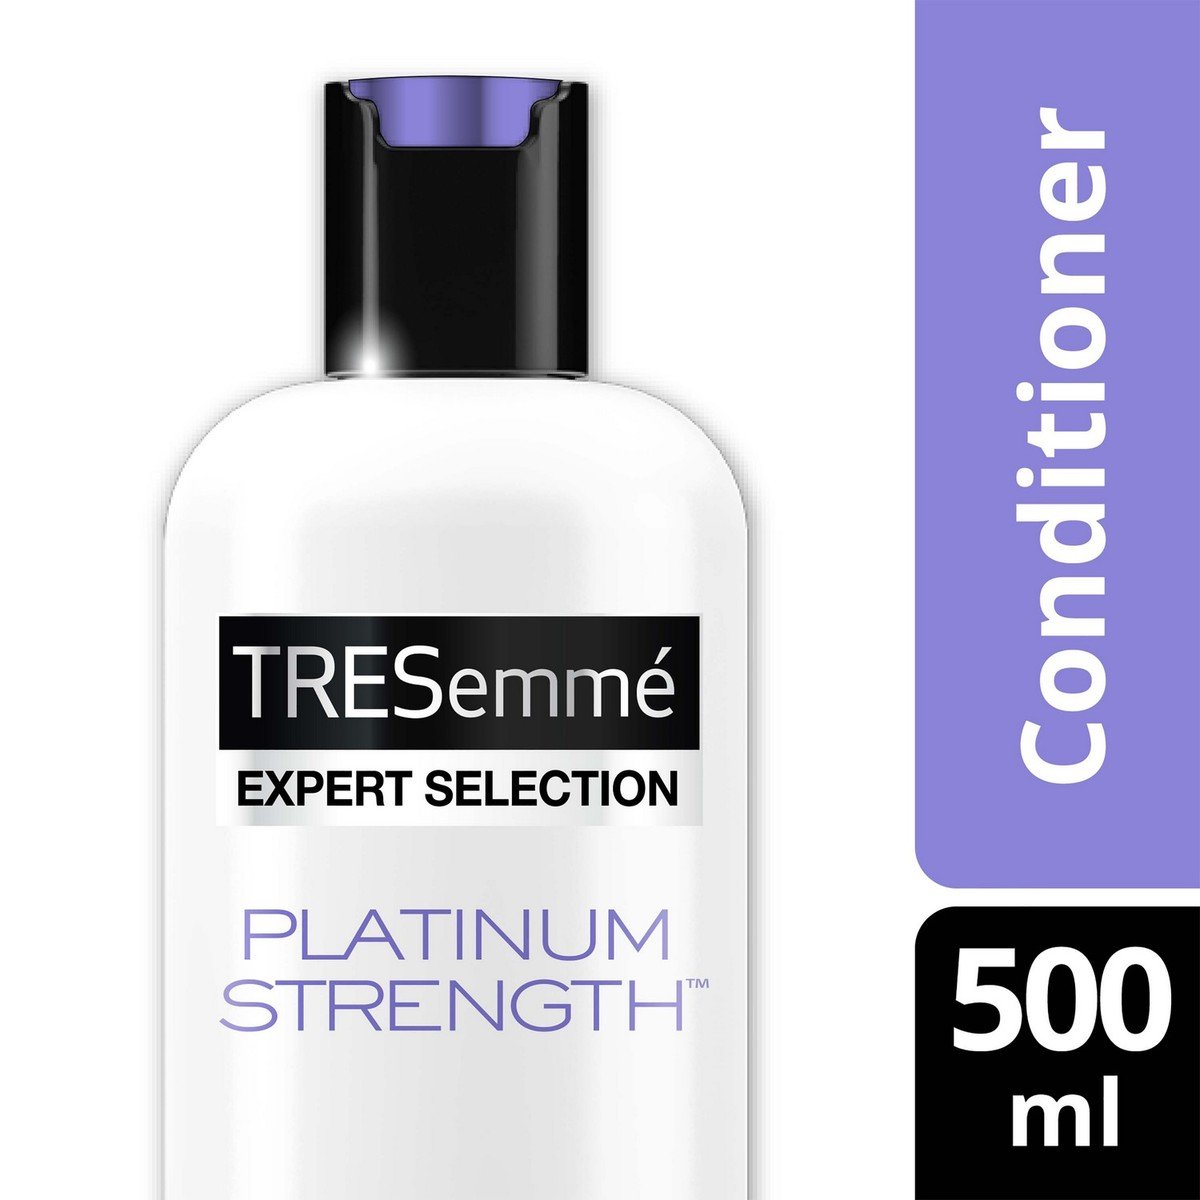 Tiresome Platinum Strength Repairing Conditioner 500 ml